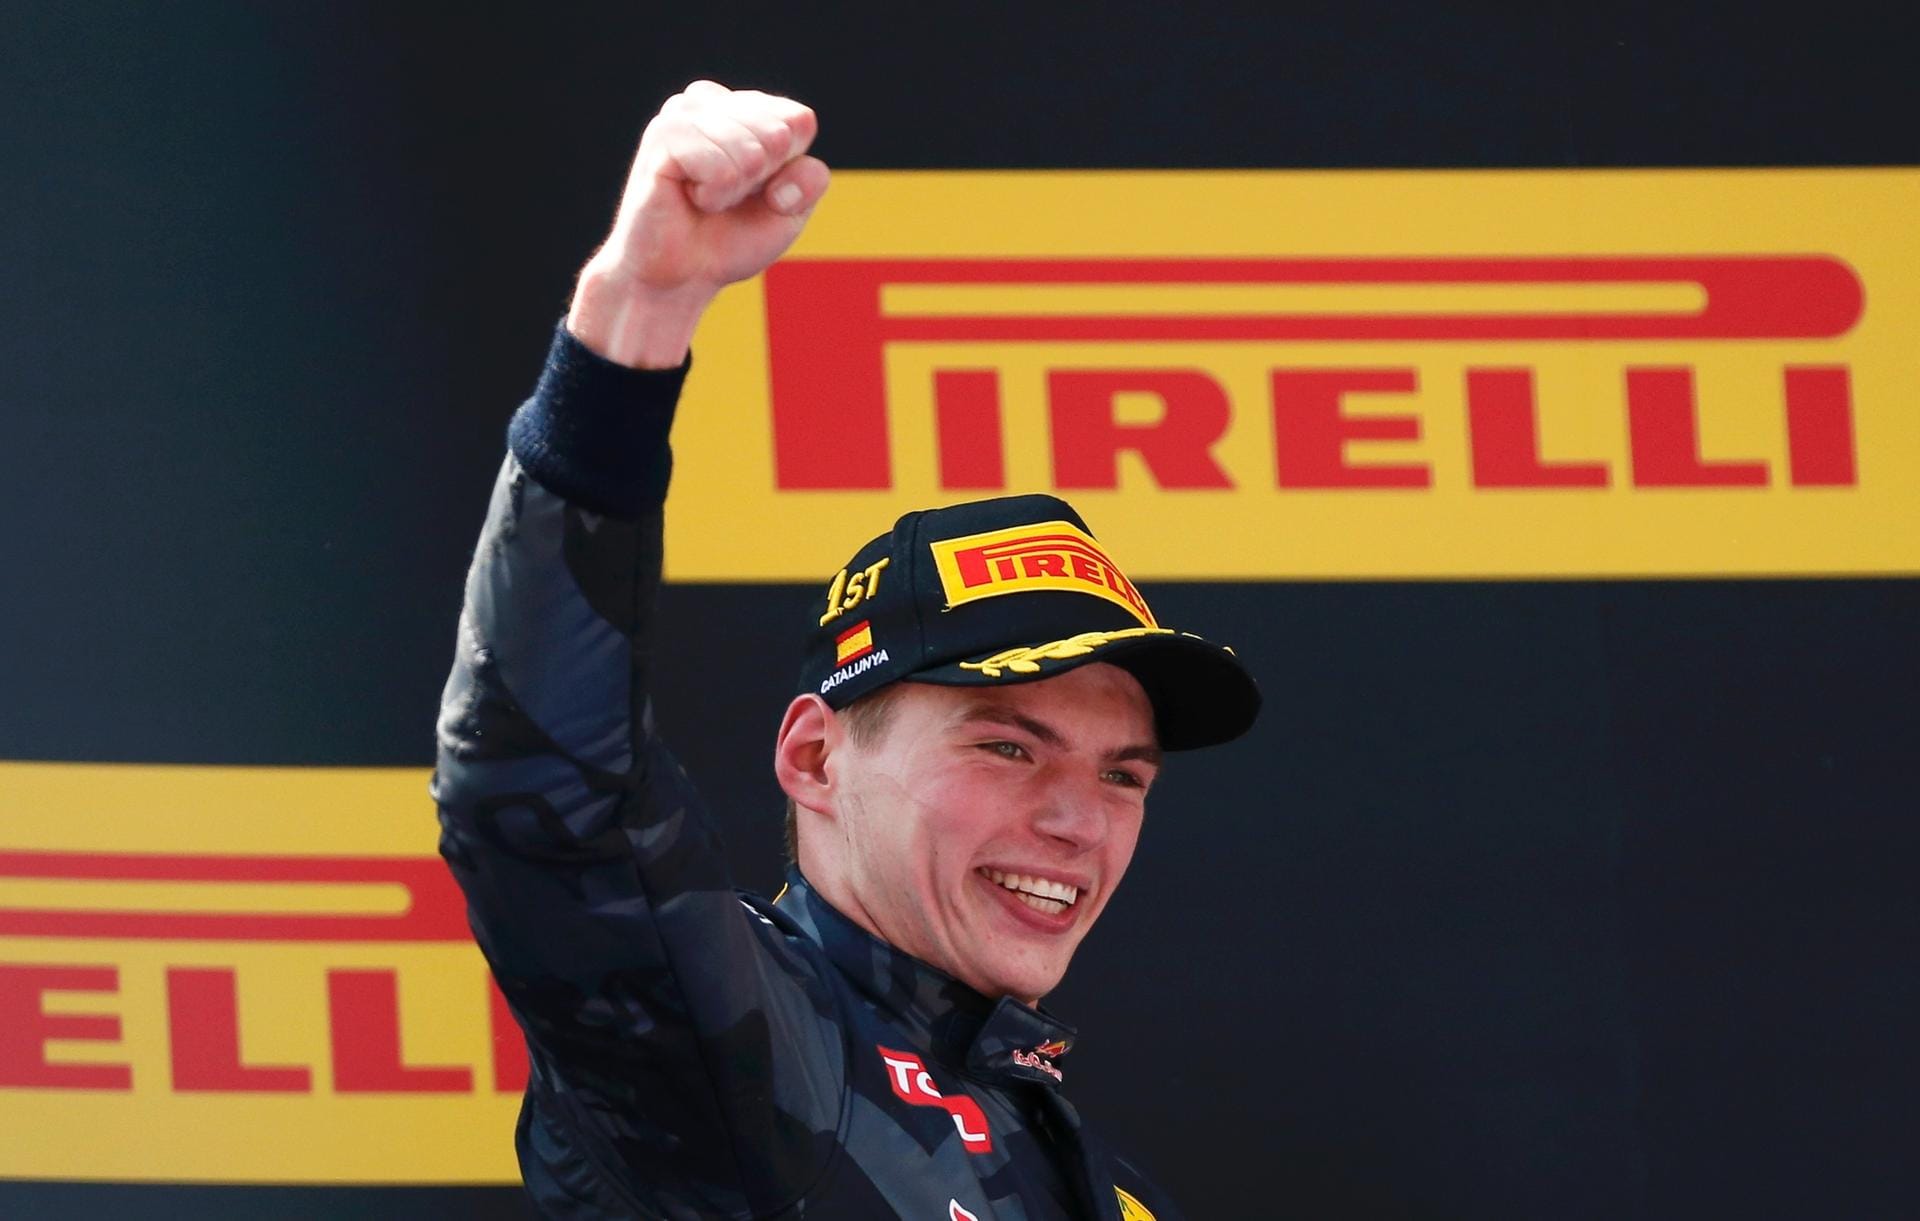 Max Verstappen feiert seinen ersten Sieg in der Formel 1.